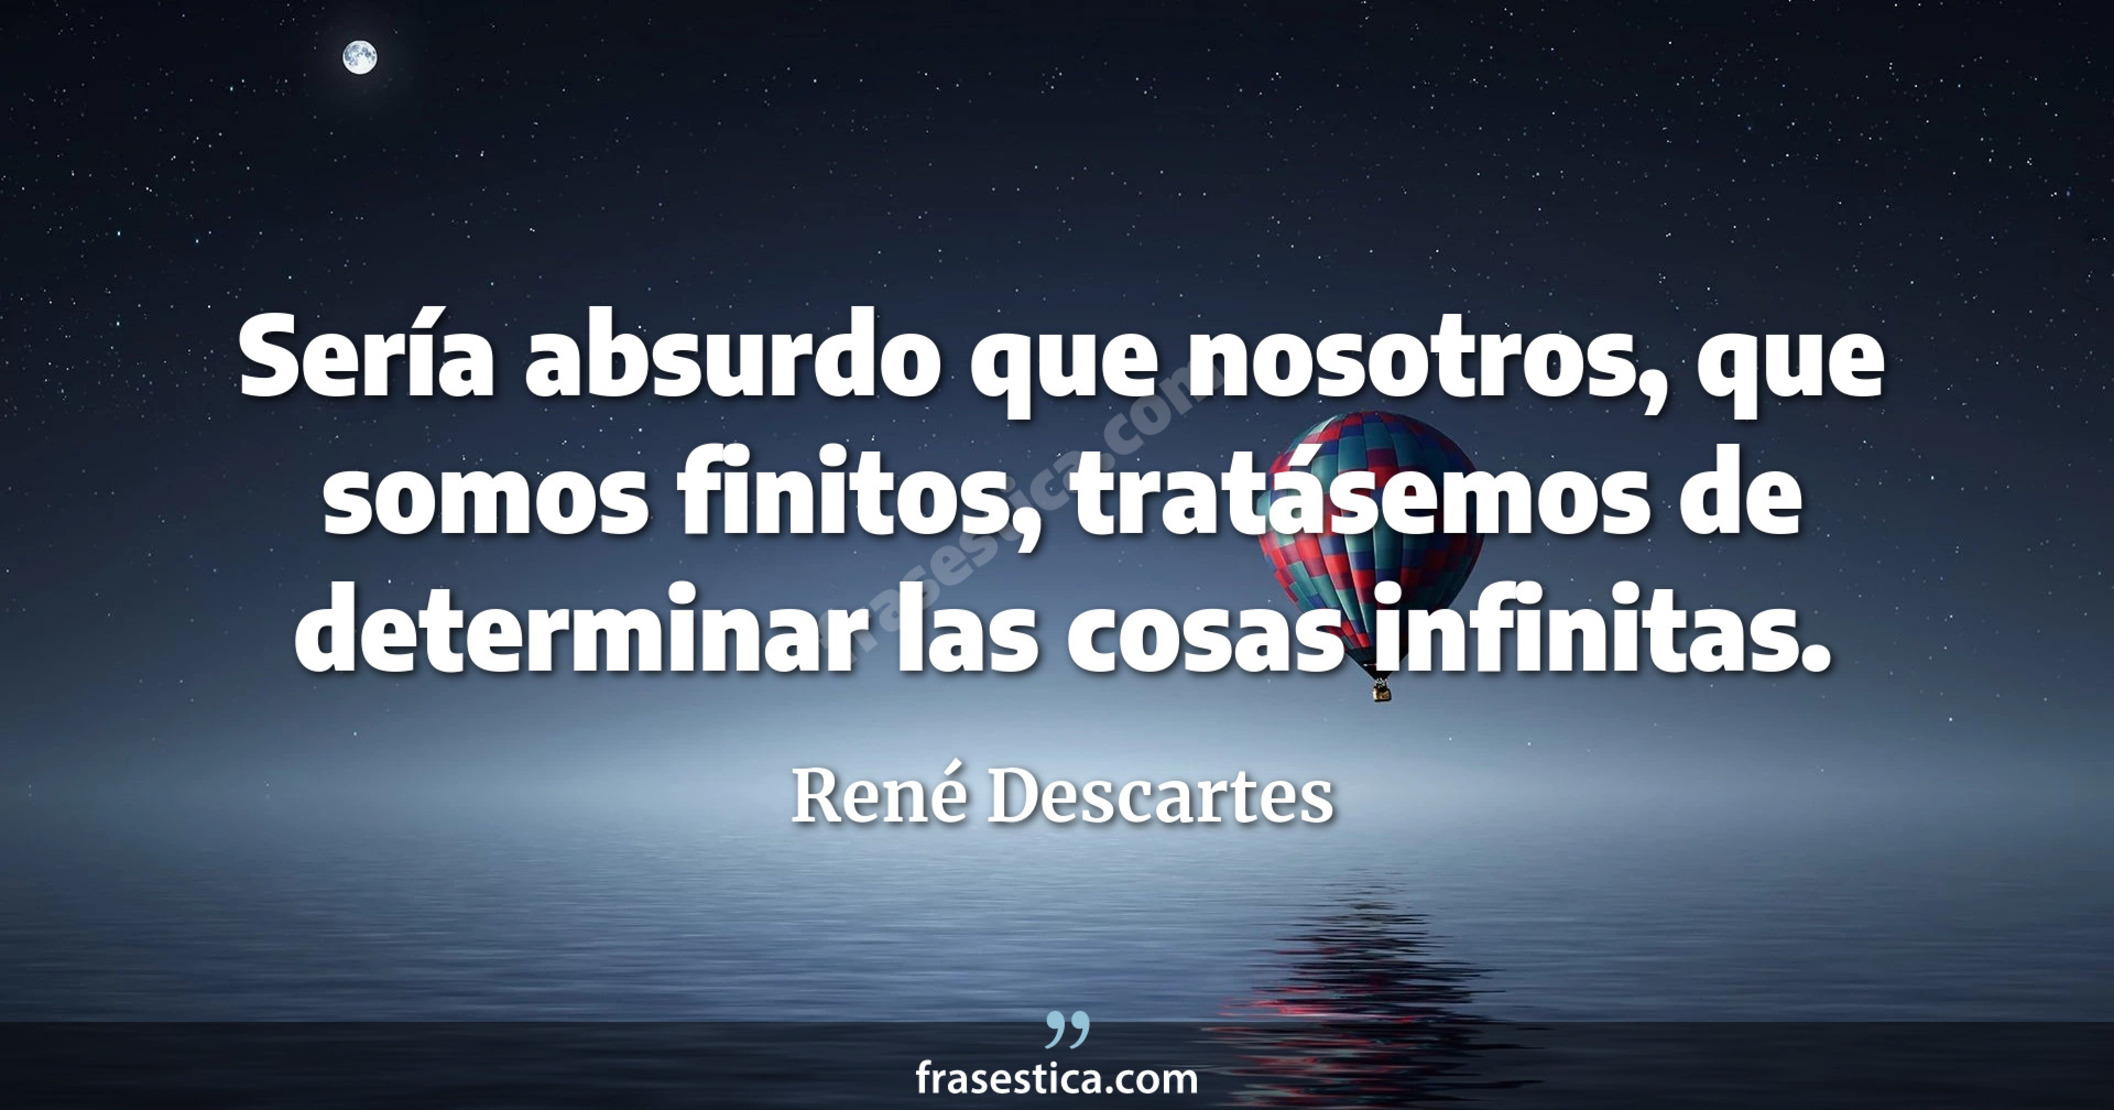 Sería absurdo que nosotros, que somos finitos, tratásemos de determinar las cosas infinitas. - René Descartes